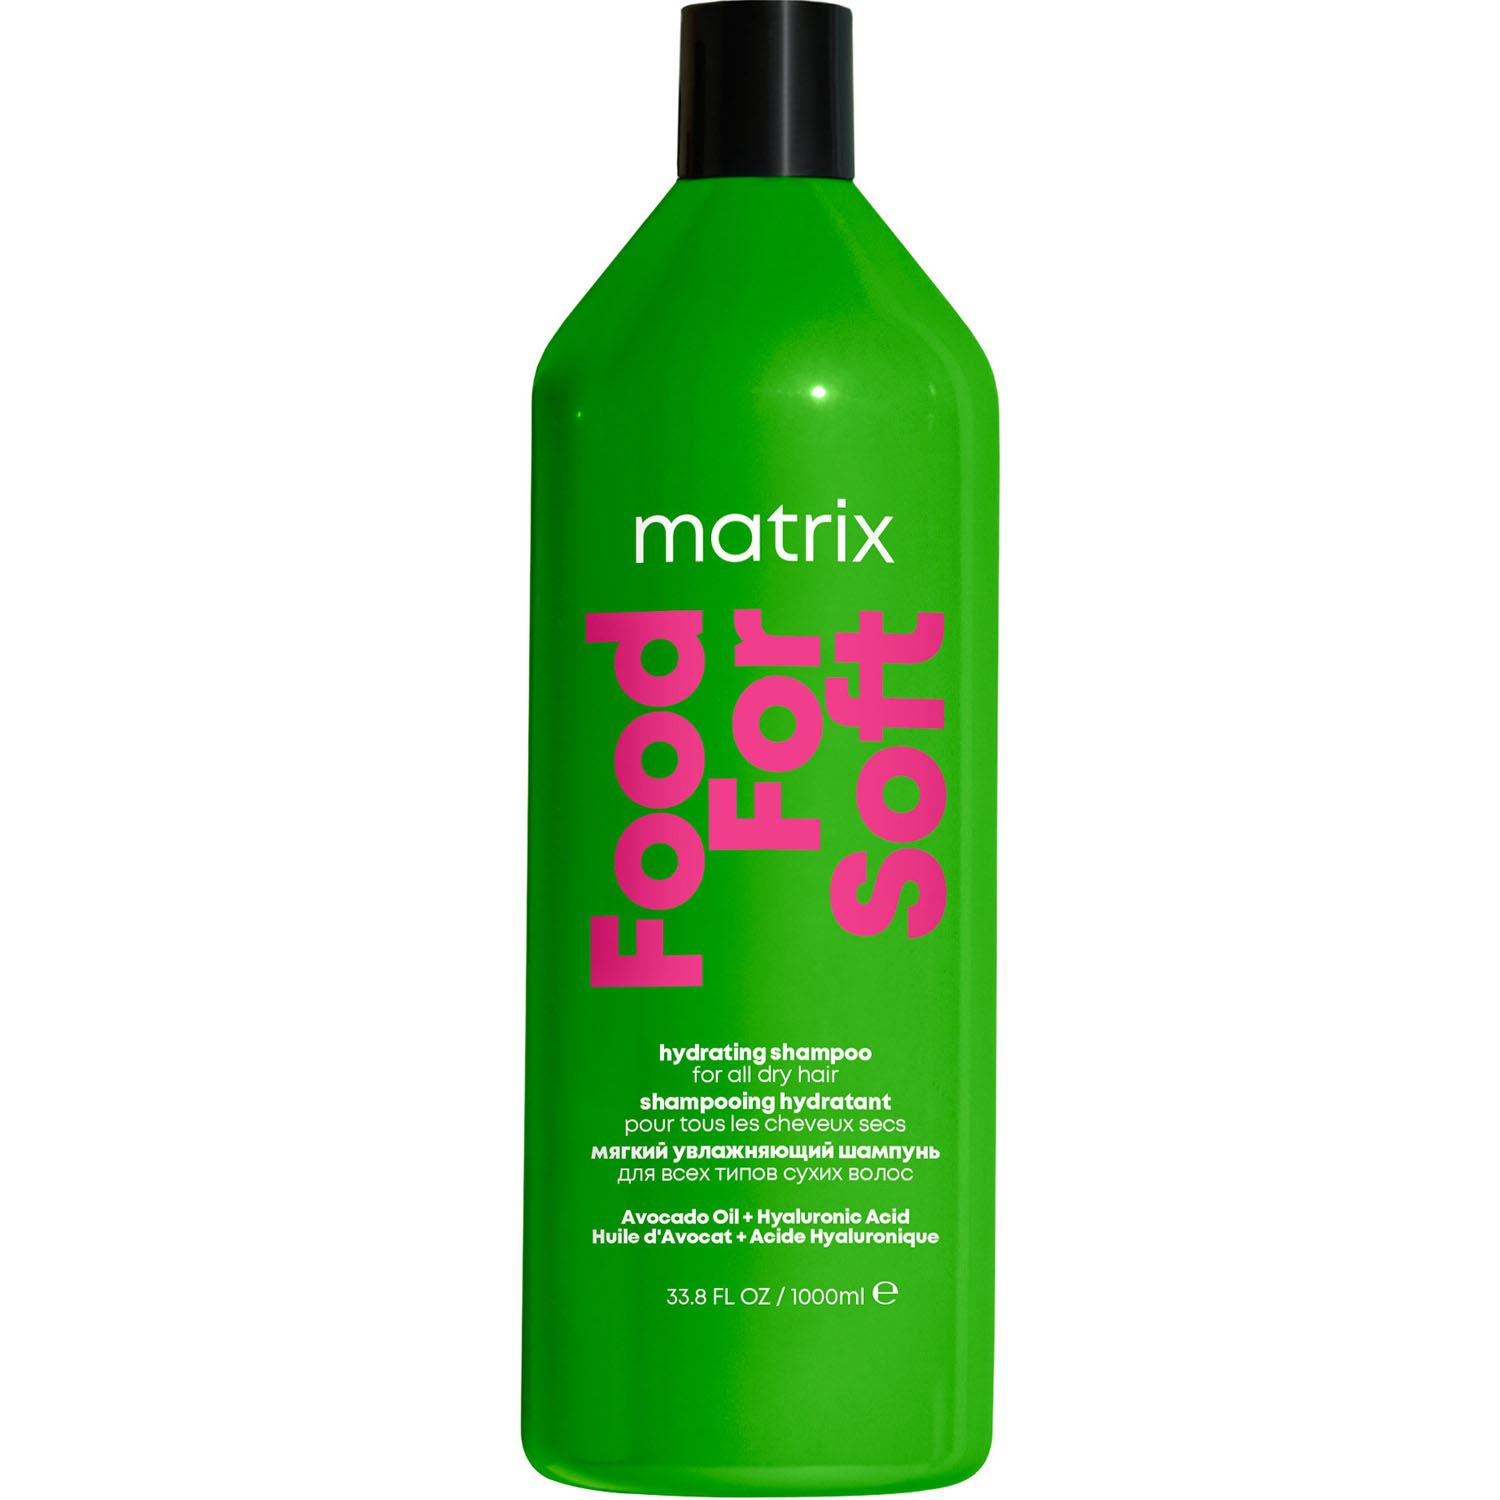 Matrix Увлажняющий шампунь с маслом авокадо и гиалуроновой кислотой для сухих волос, 1000 мл (Matrix, Food For Soft)